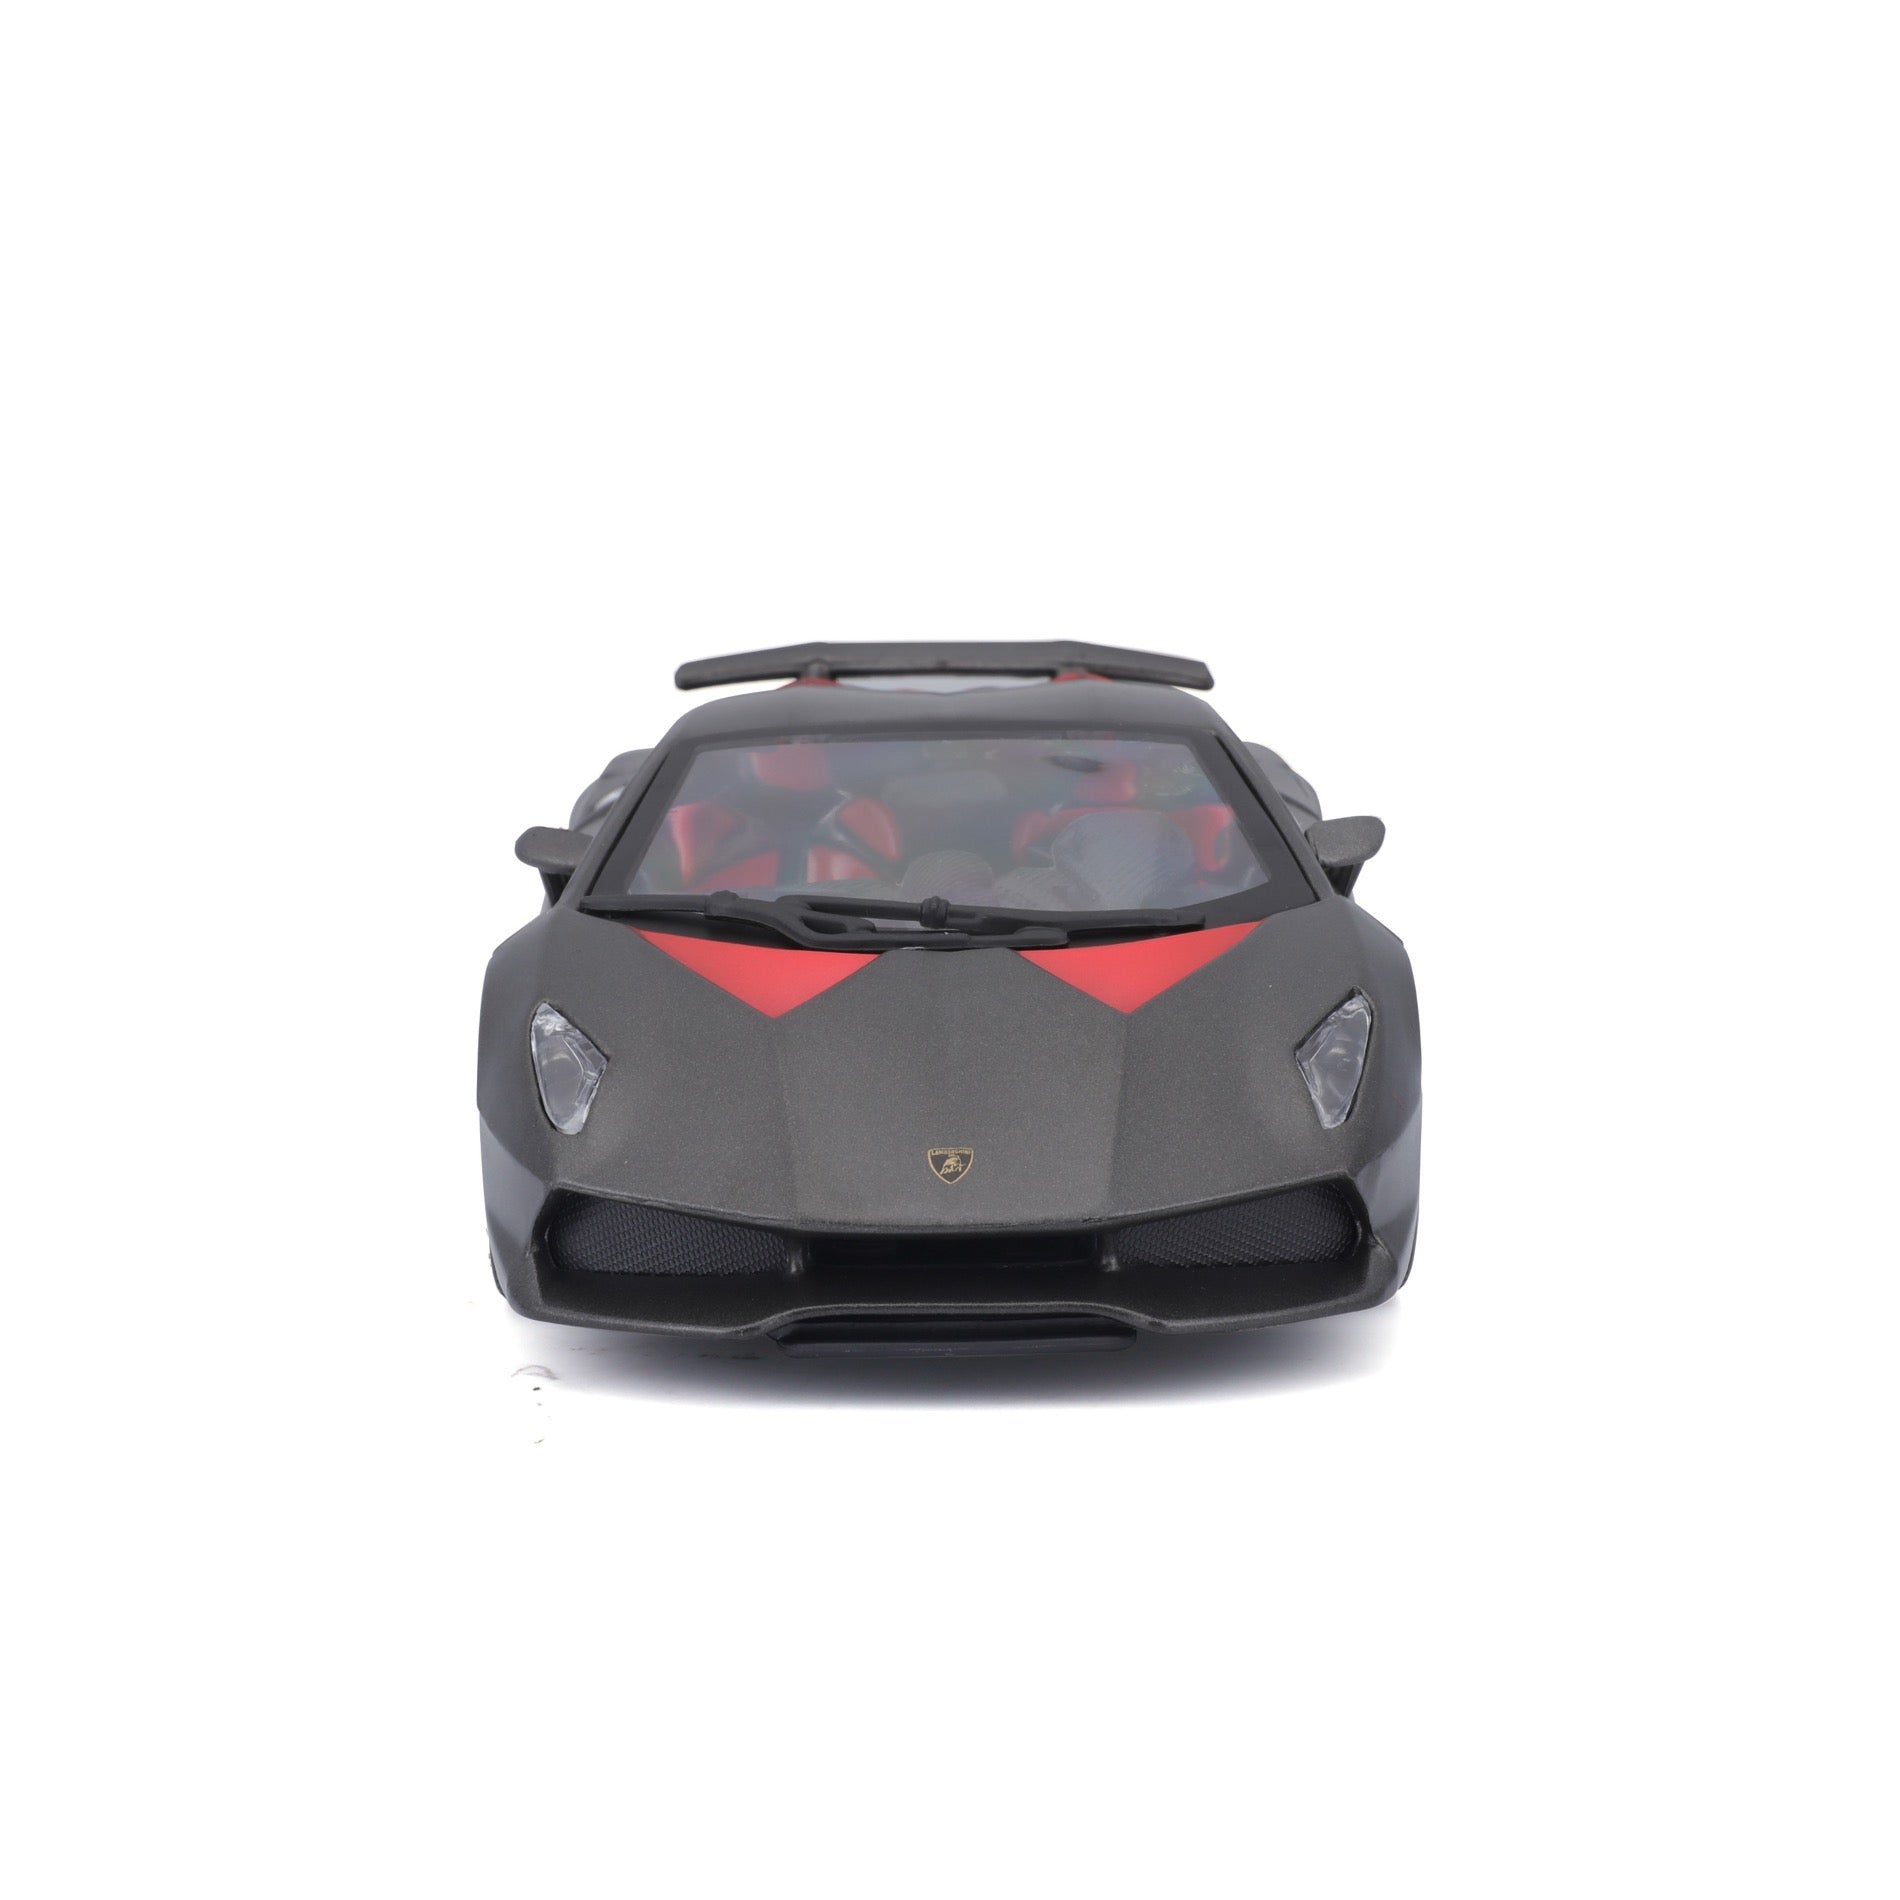 18-21061 Bburago 1:24 Collezione - Lamborghini Sesto Elemento Met Grey